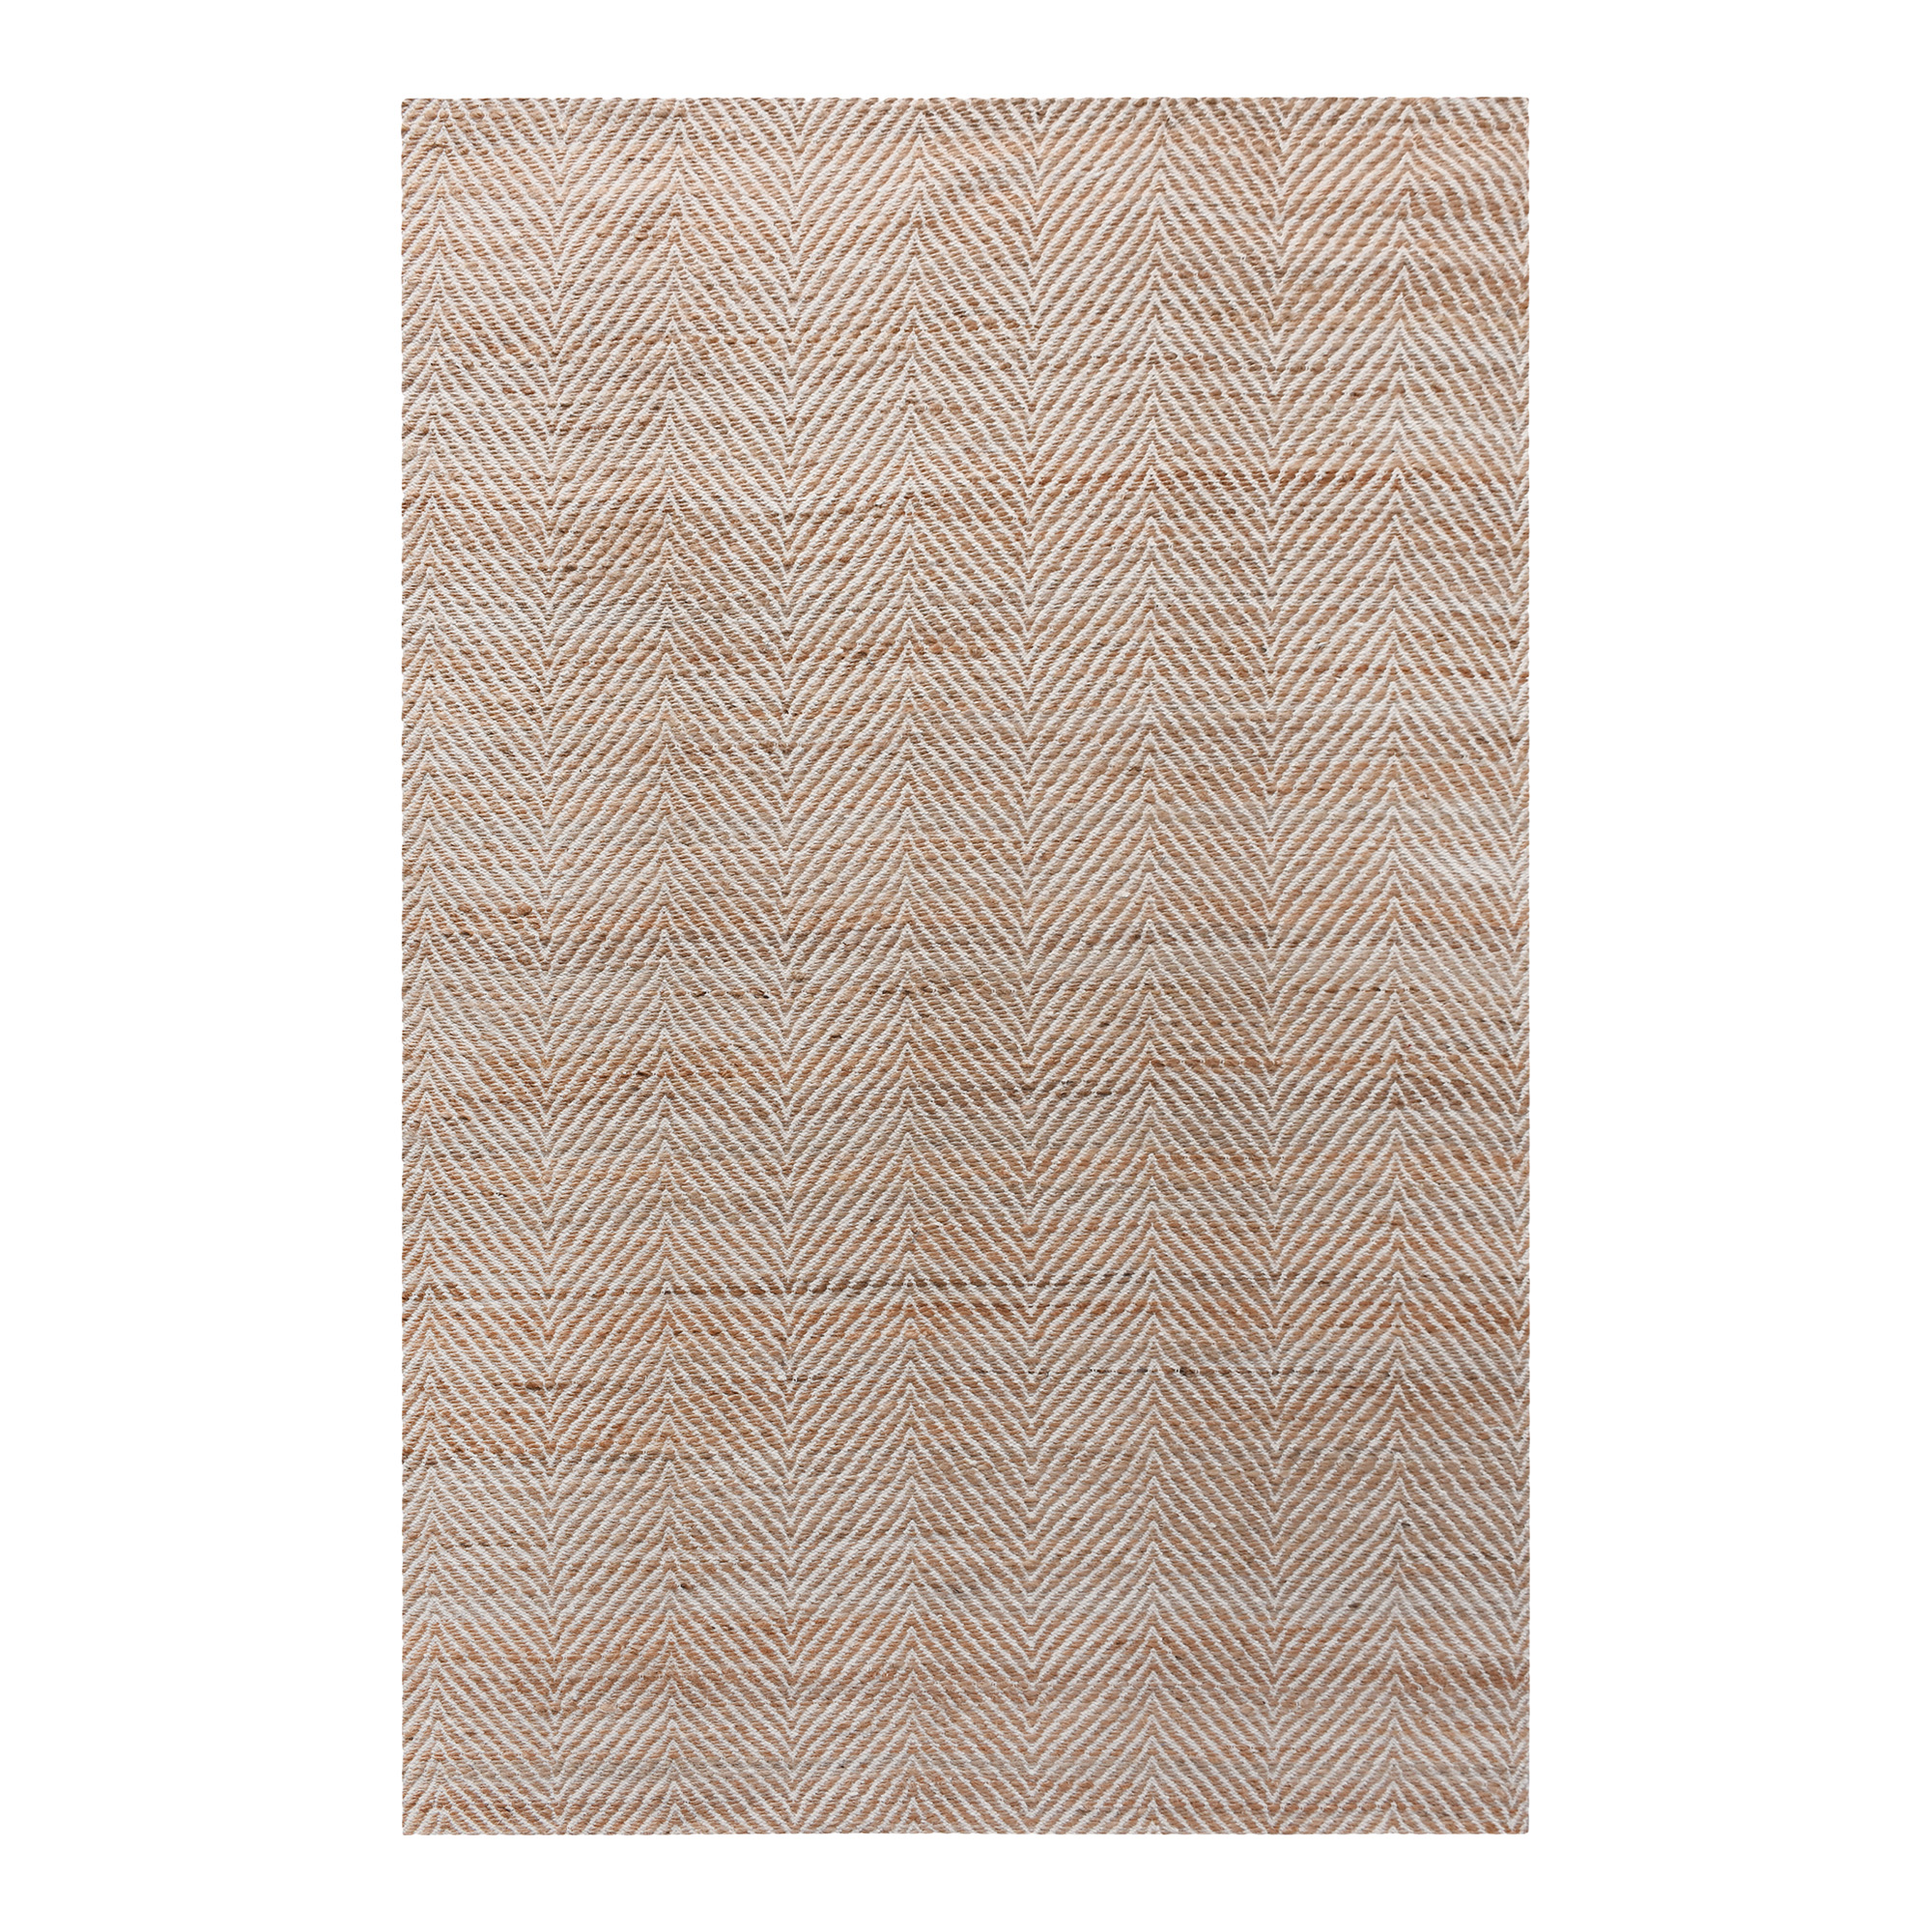 HOUSE NORDIC Amabala gulvtæppe, rektangulær - natur/råhvid jute/uld/bomuld (200x300)